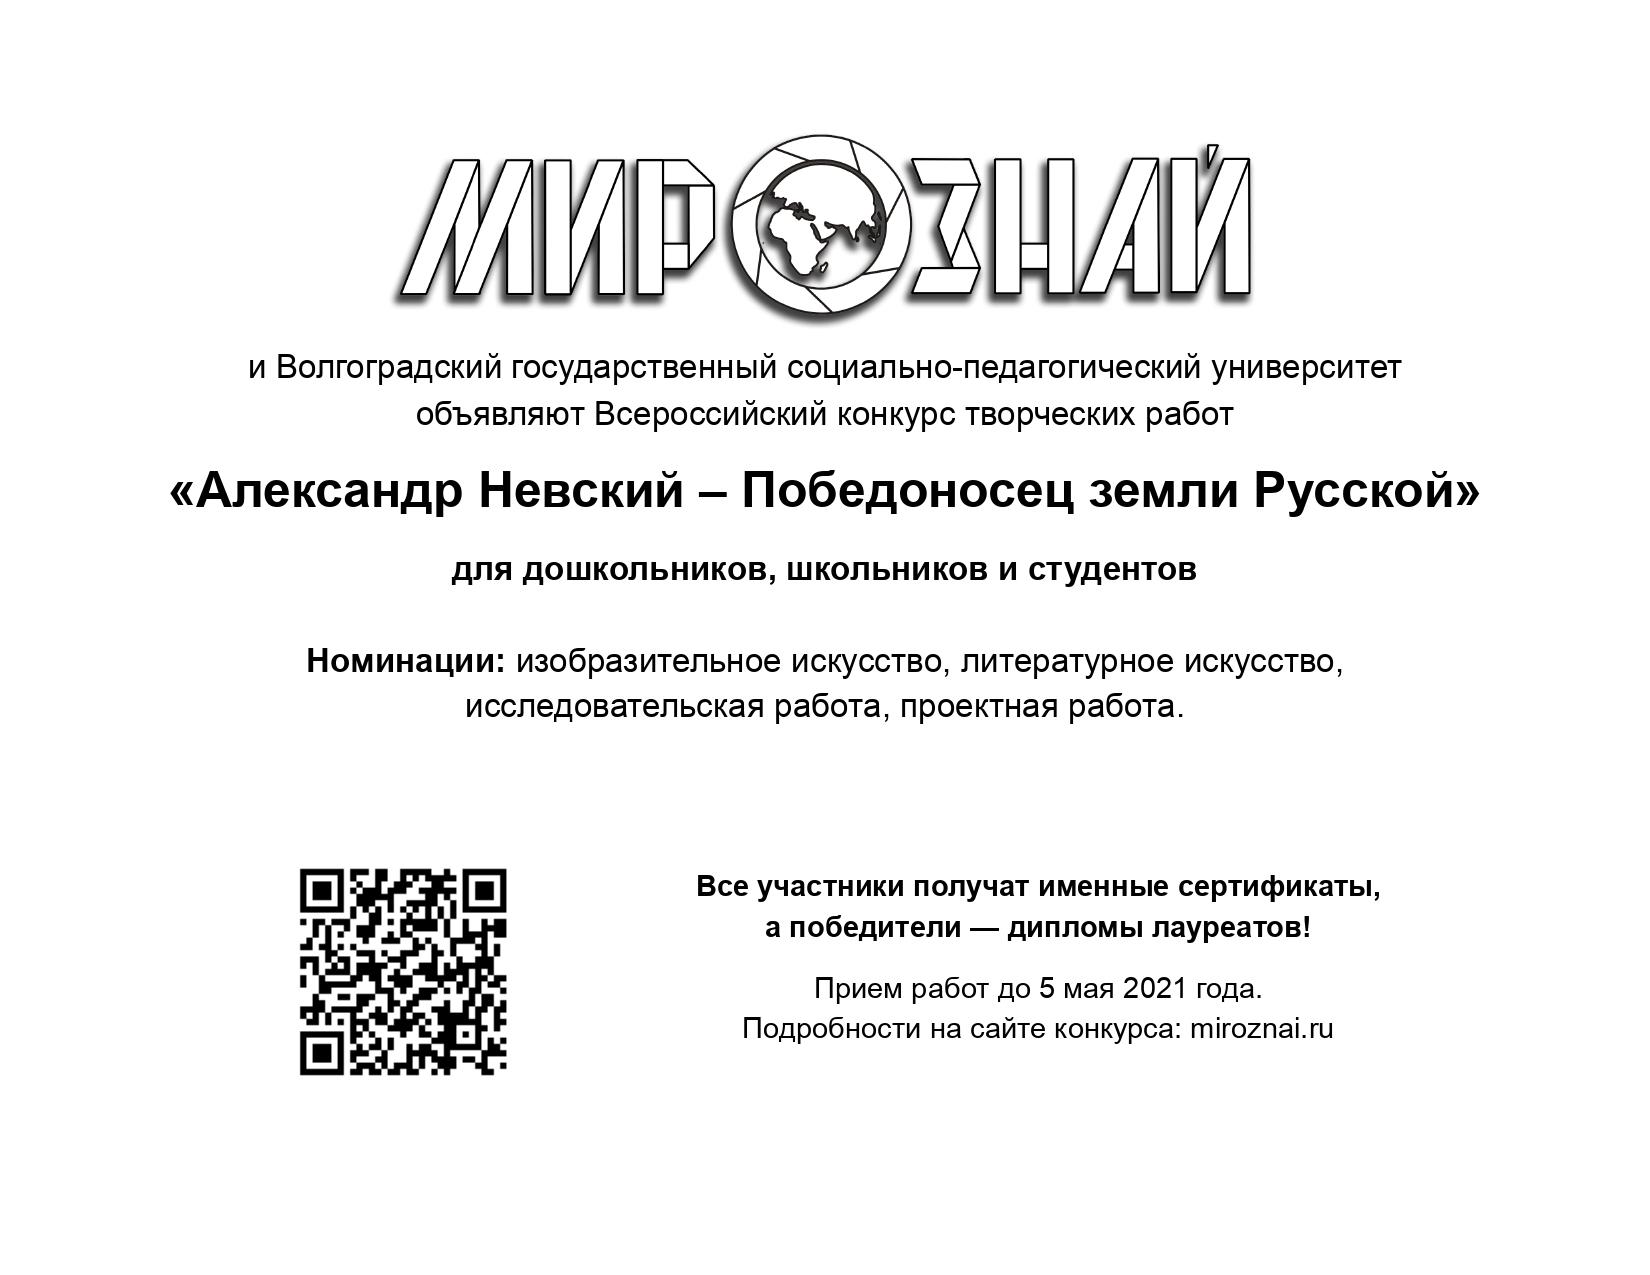 Александр Невский 2021 (на доску объявлений)_page-0001.jpg